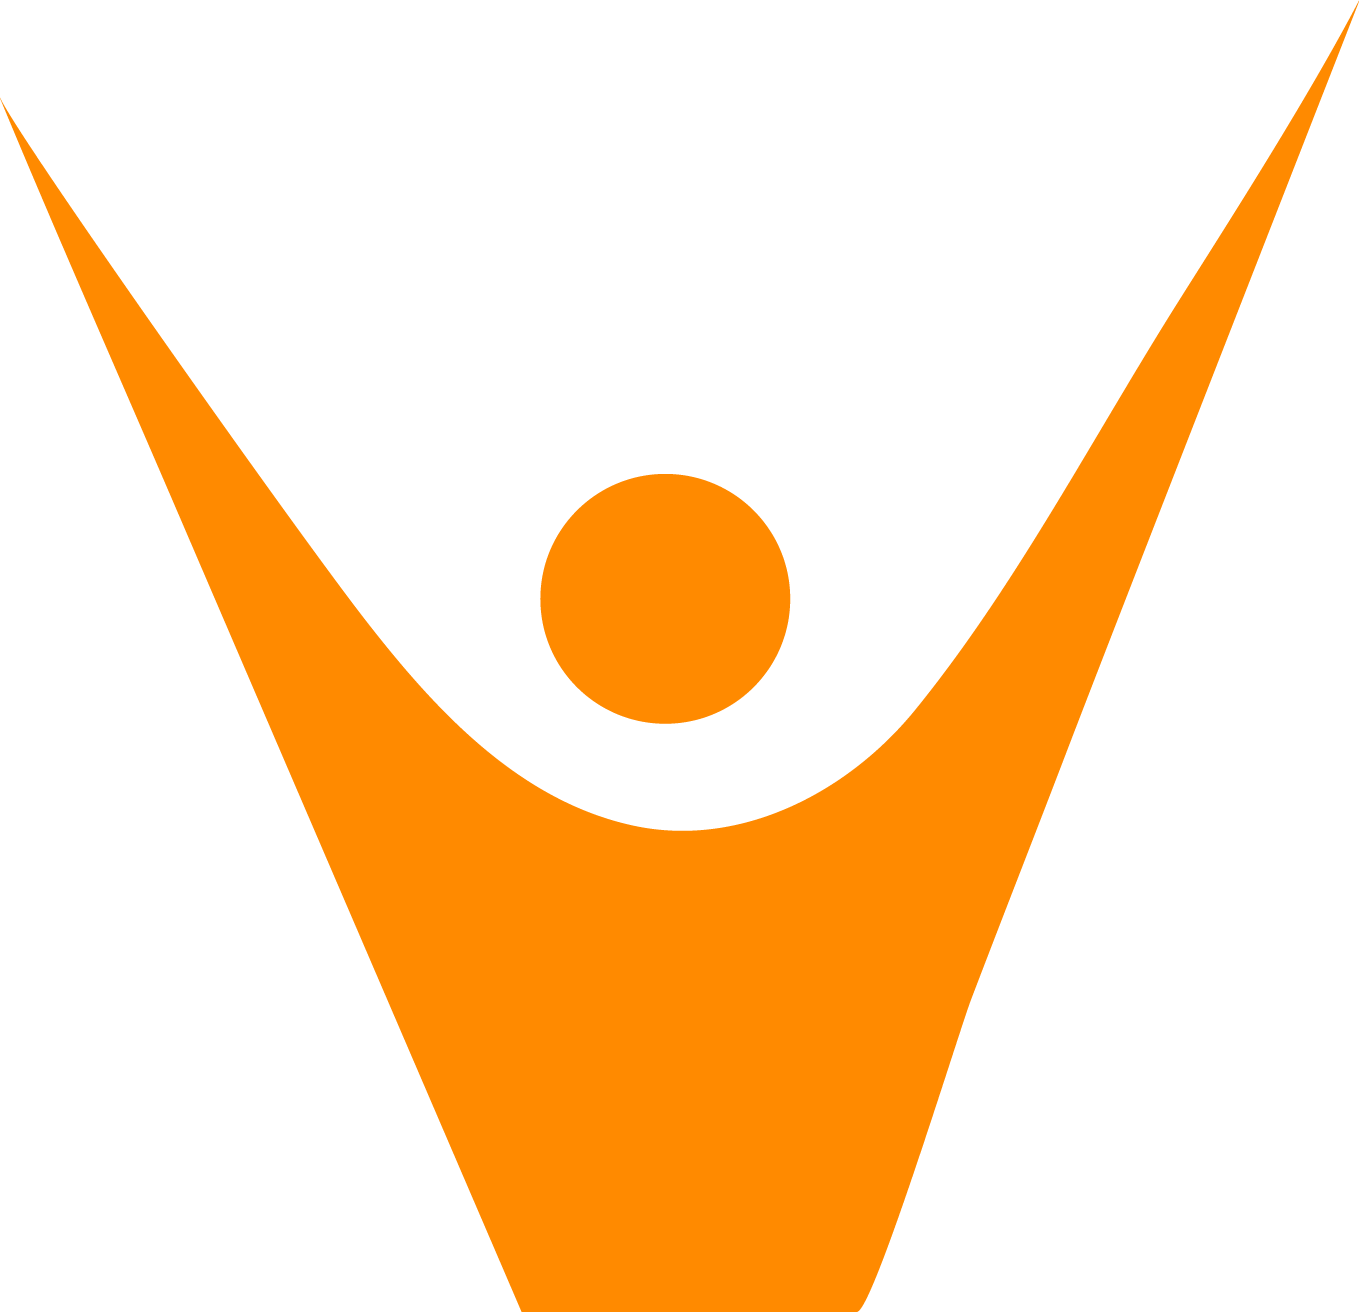 FavTutor logo